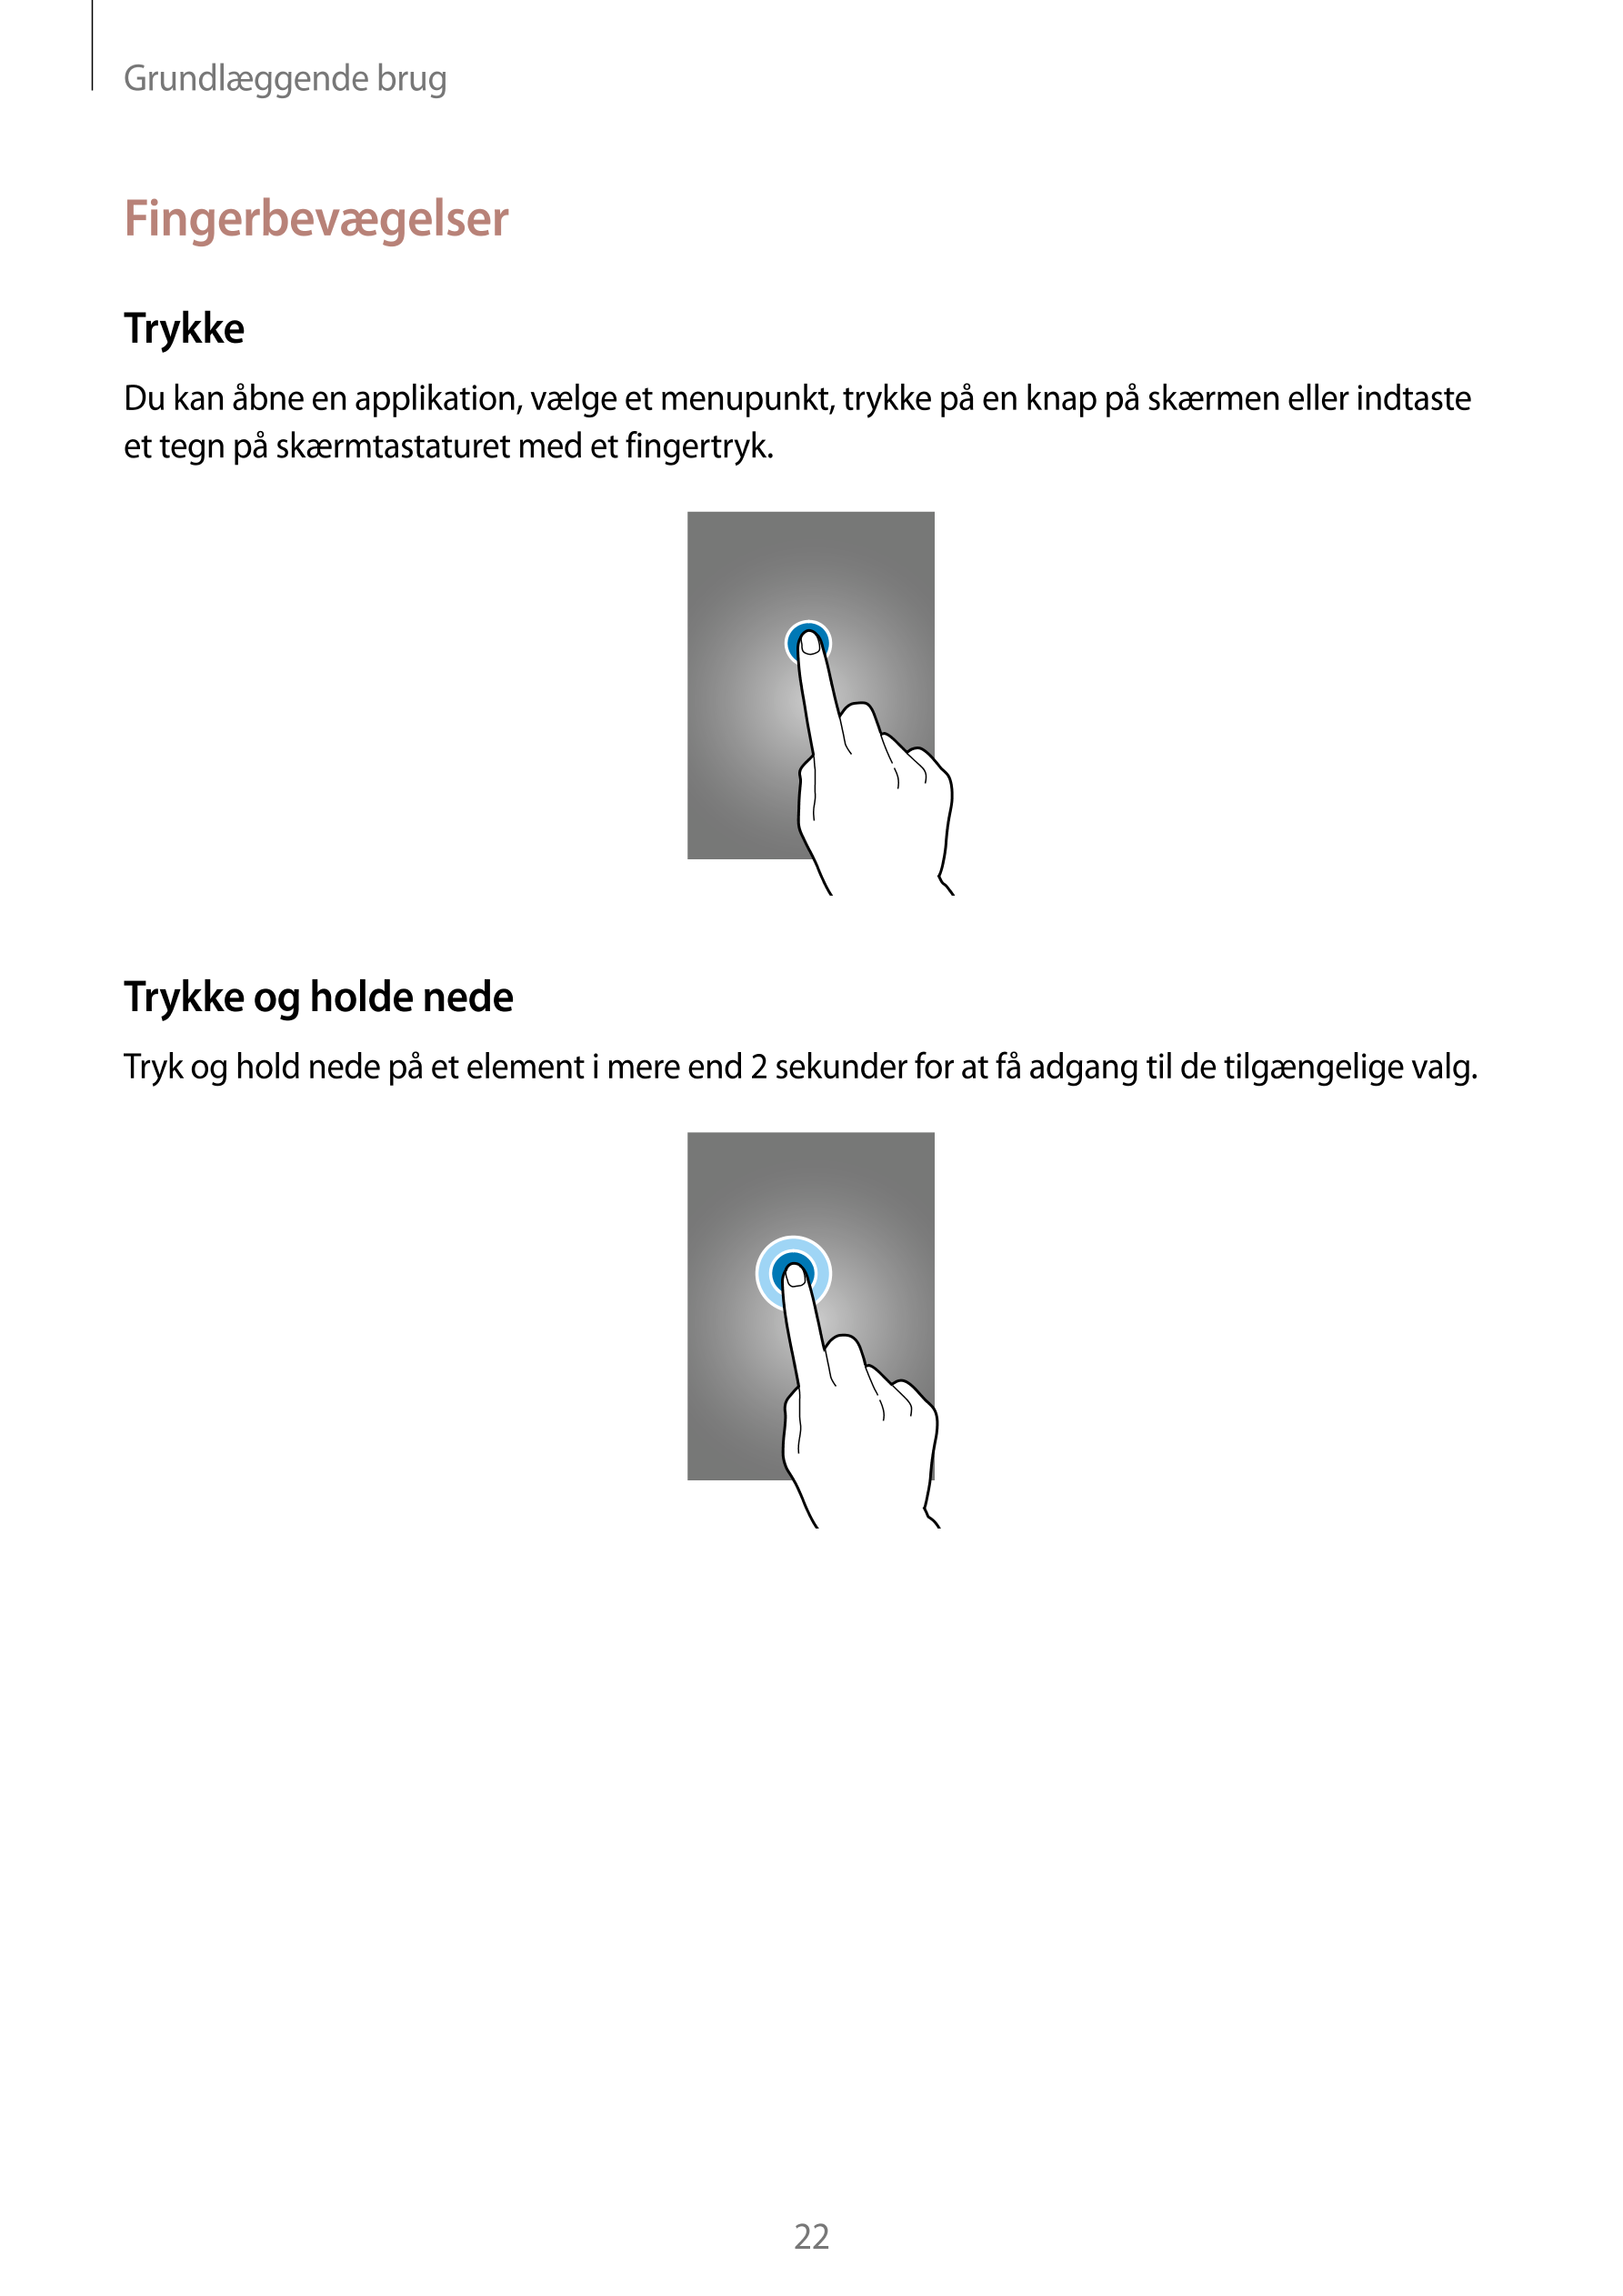 Grundlæggende brug
Fingerbevægelser
Trykke
Du kan åbne en applikation, vælge et menupunkt, trykke på en knap på skærmen eller in